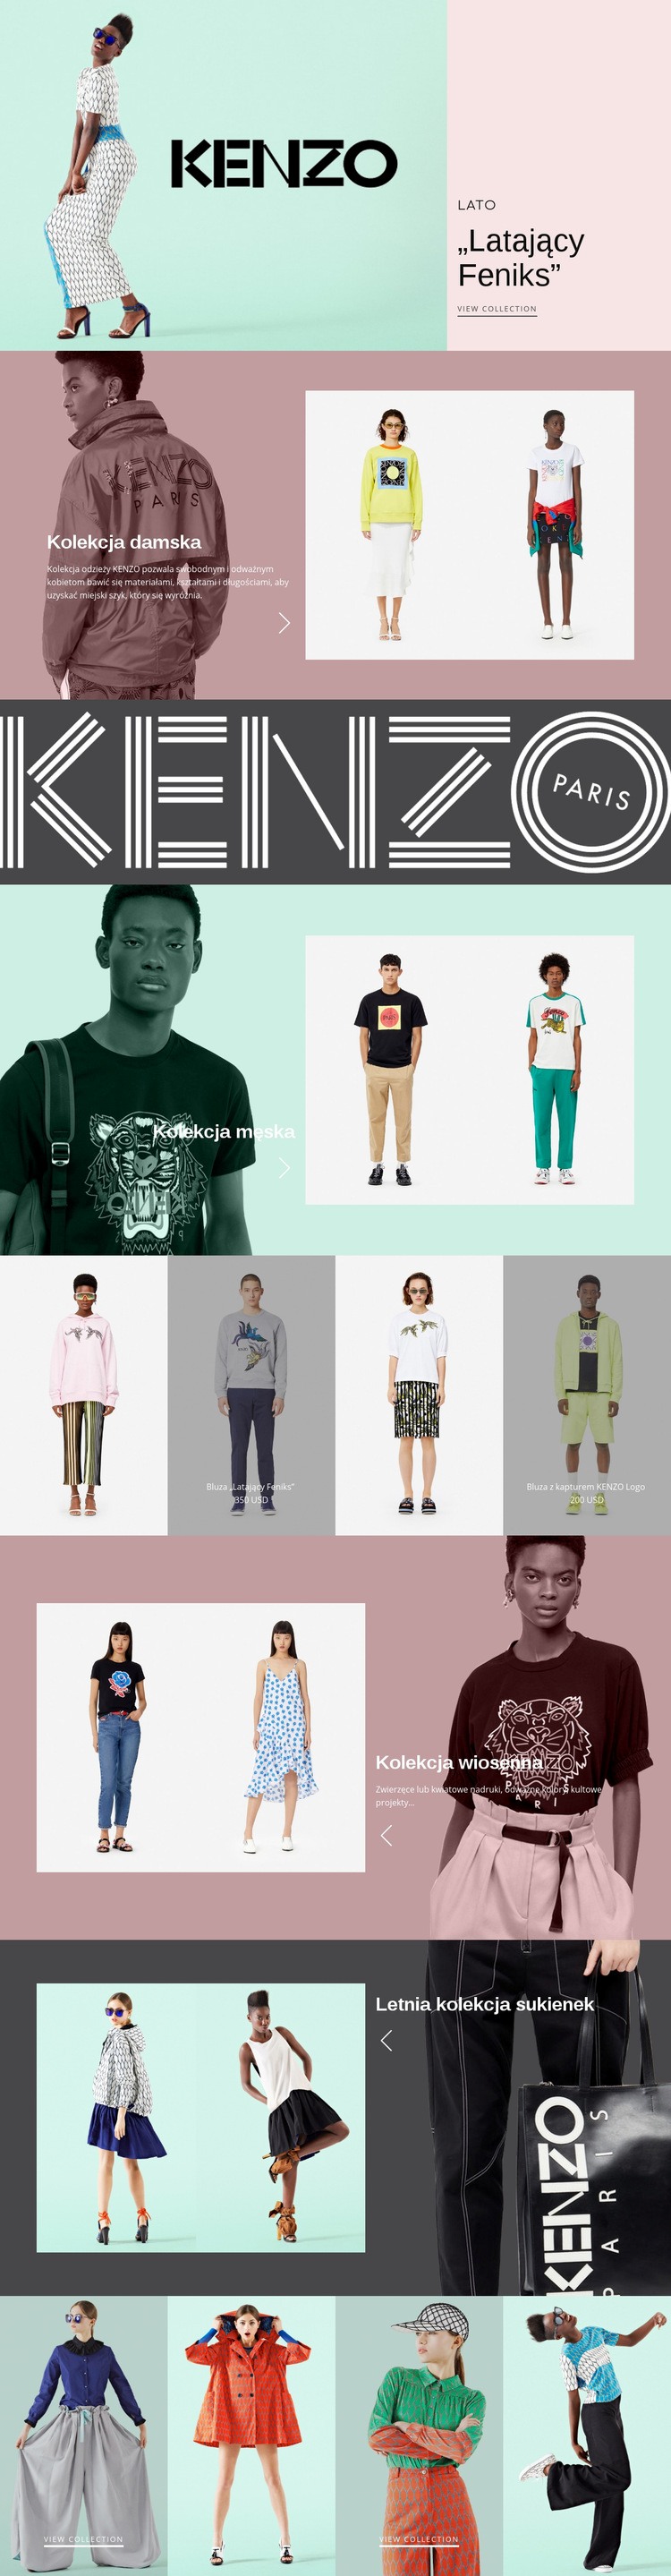 Atelier nowoczesnej mody Makieta strony internetowej